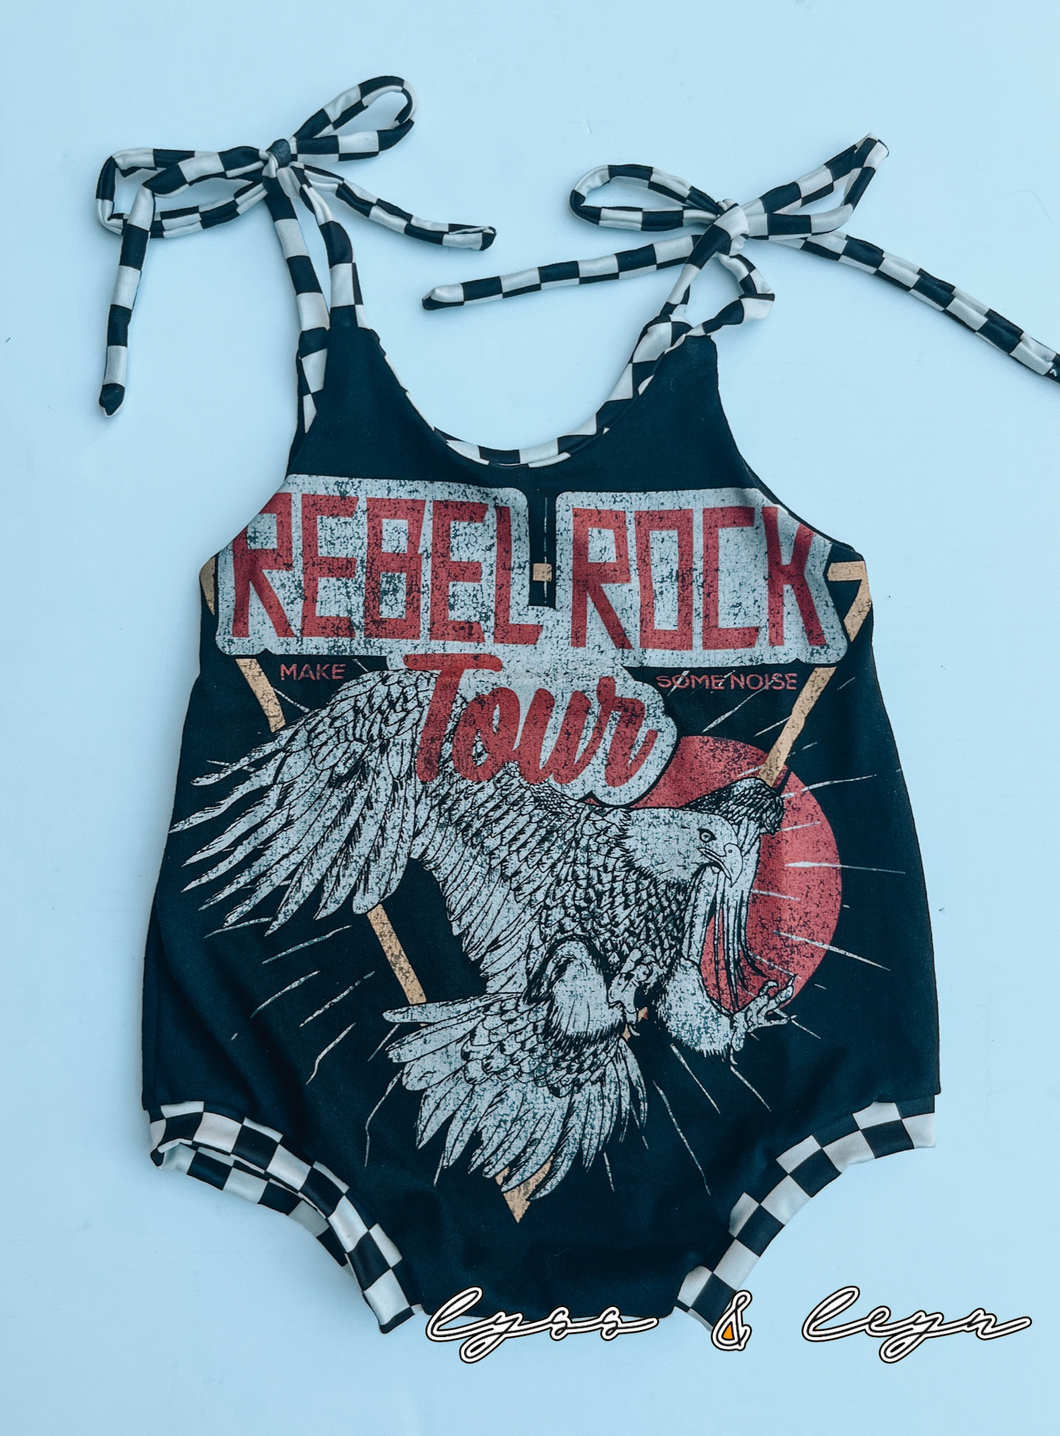 Rebel rock